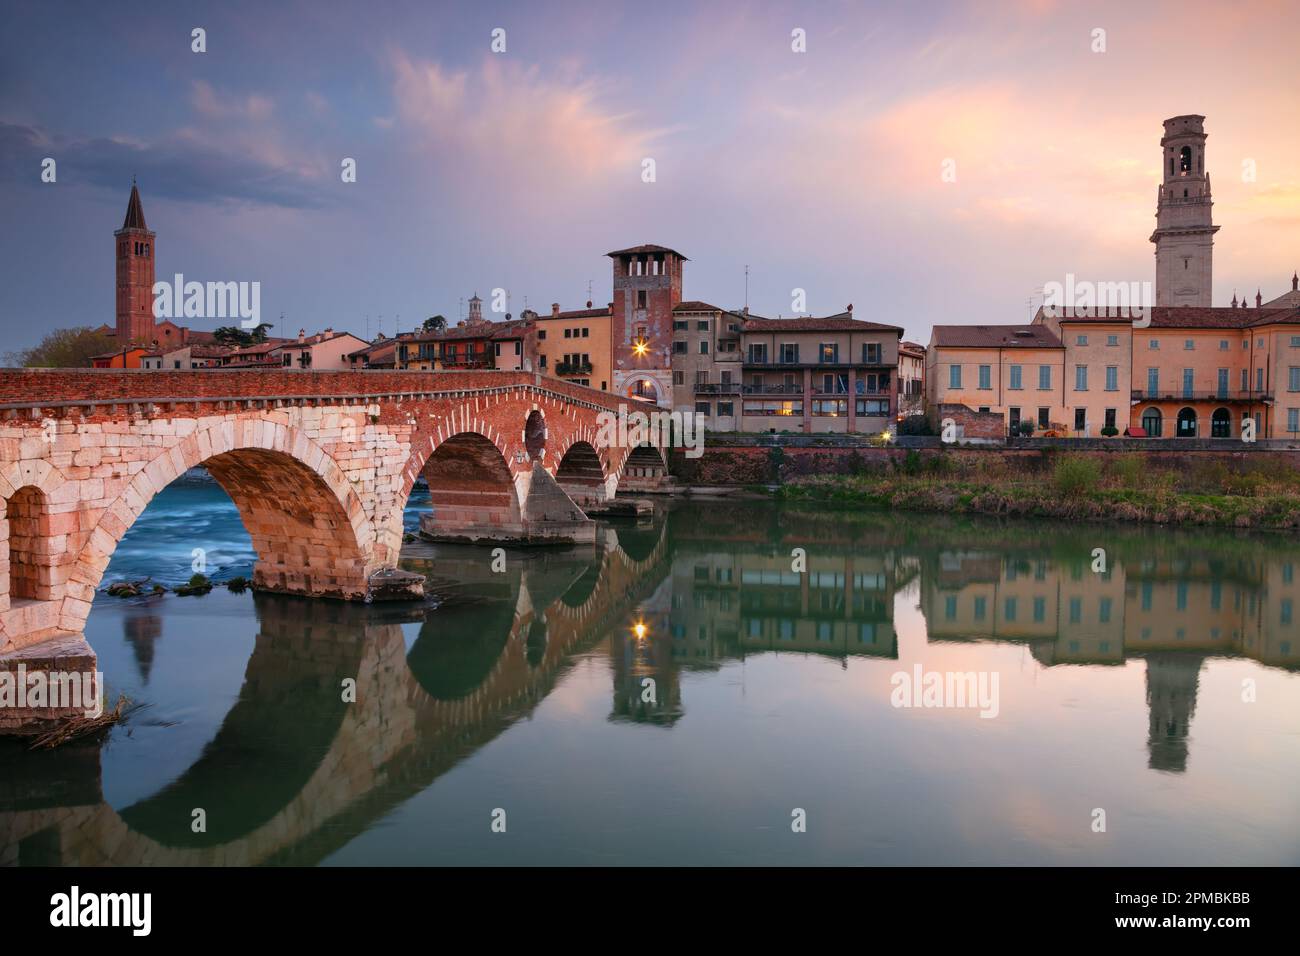 Verona, Italien. Stadtbild der wunderschönen italienischen Stadt Verona mit Steinbrücke über dem Fluss Adige bei Sonnenuntergang. Stockfoto